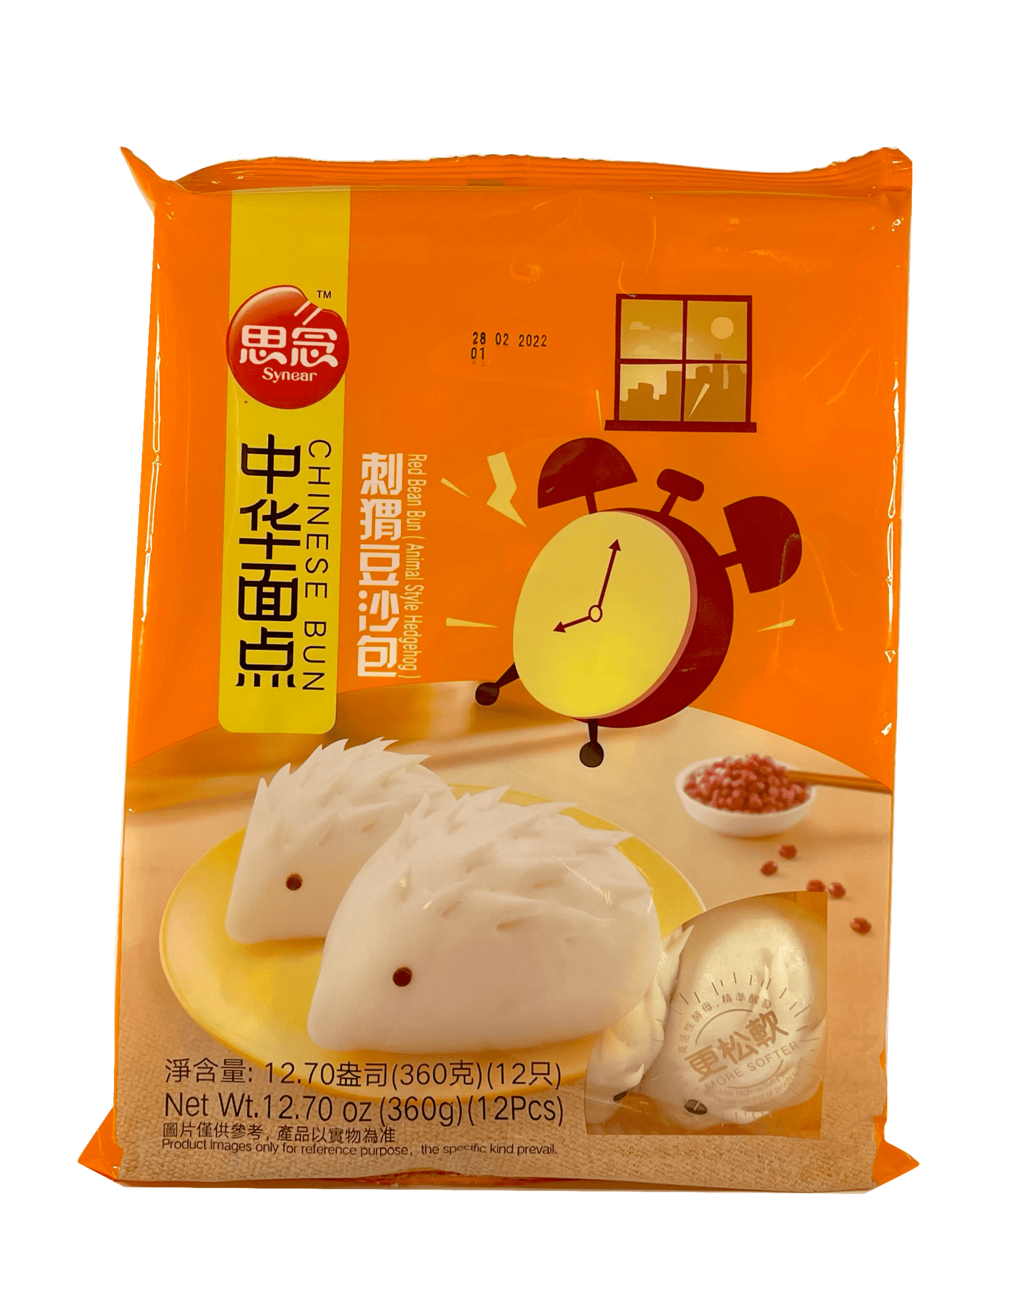 冷冻 刺猬豆沙包 360g - 思念 中国